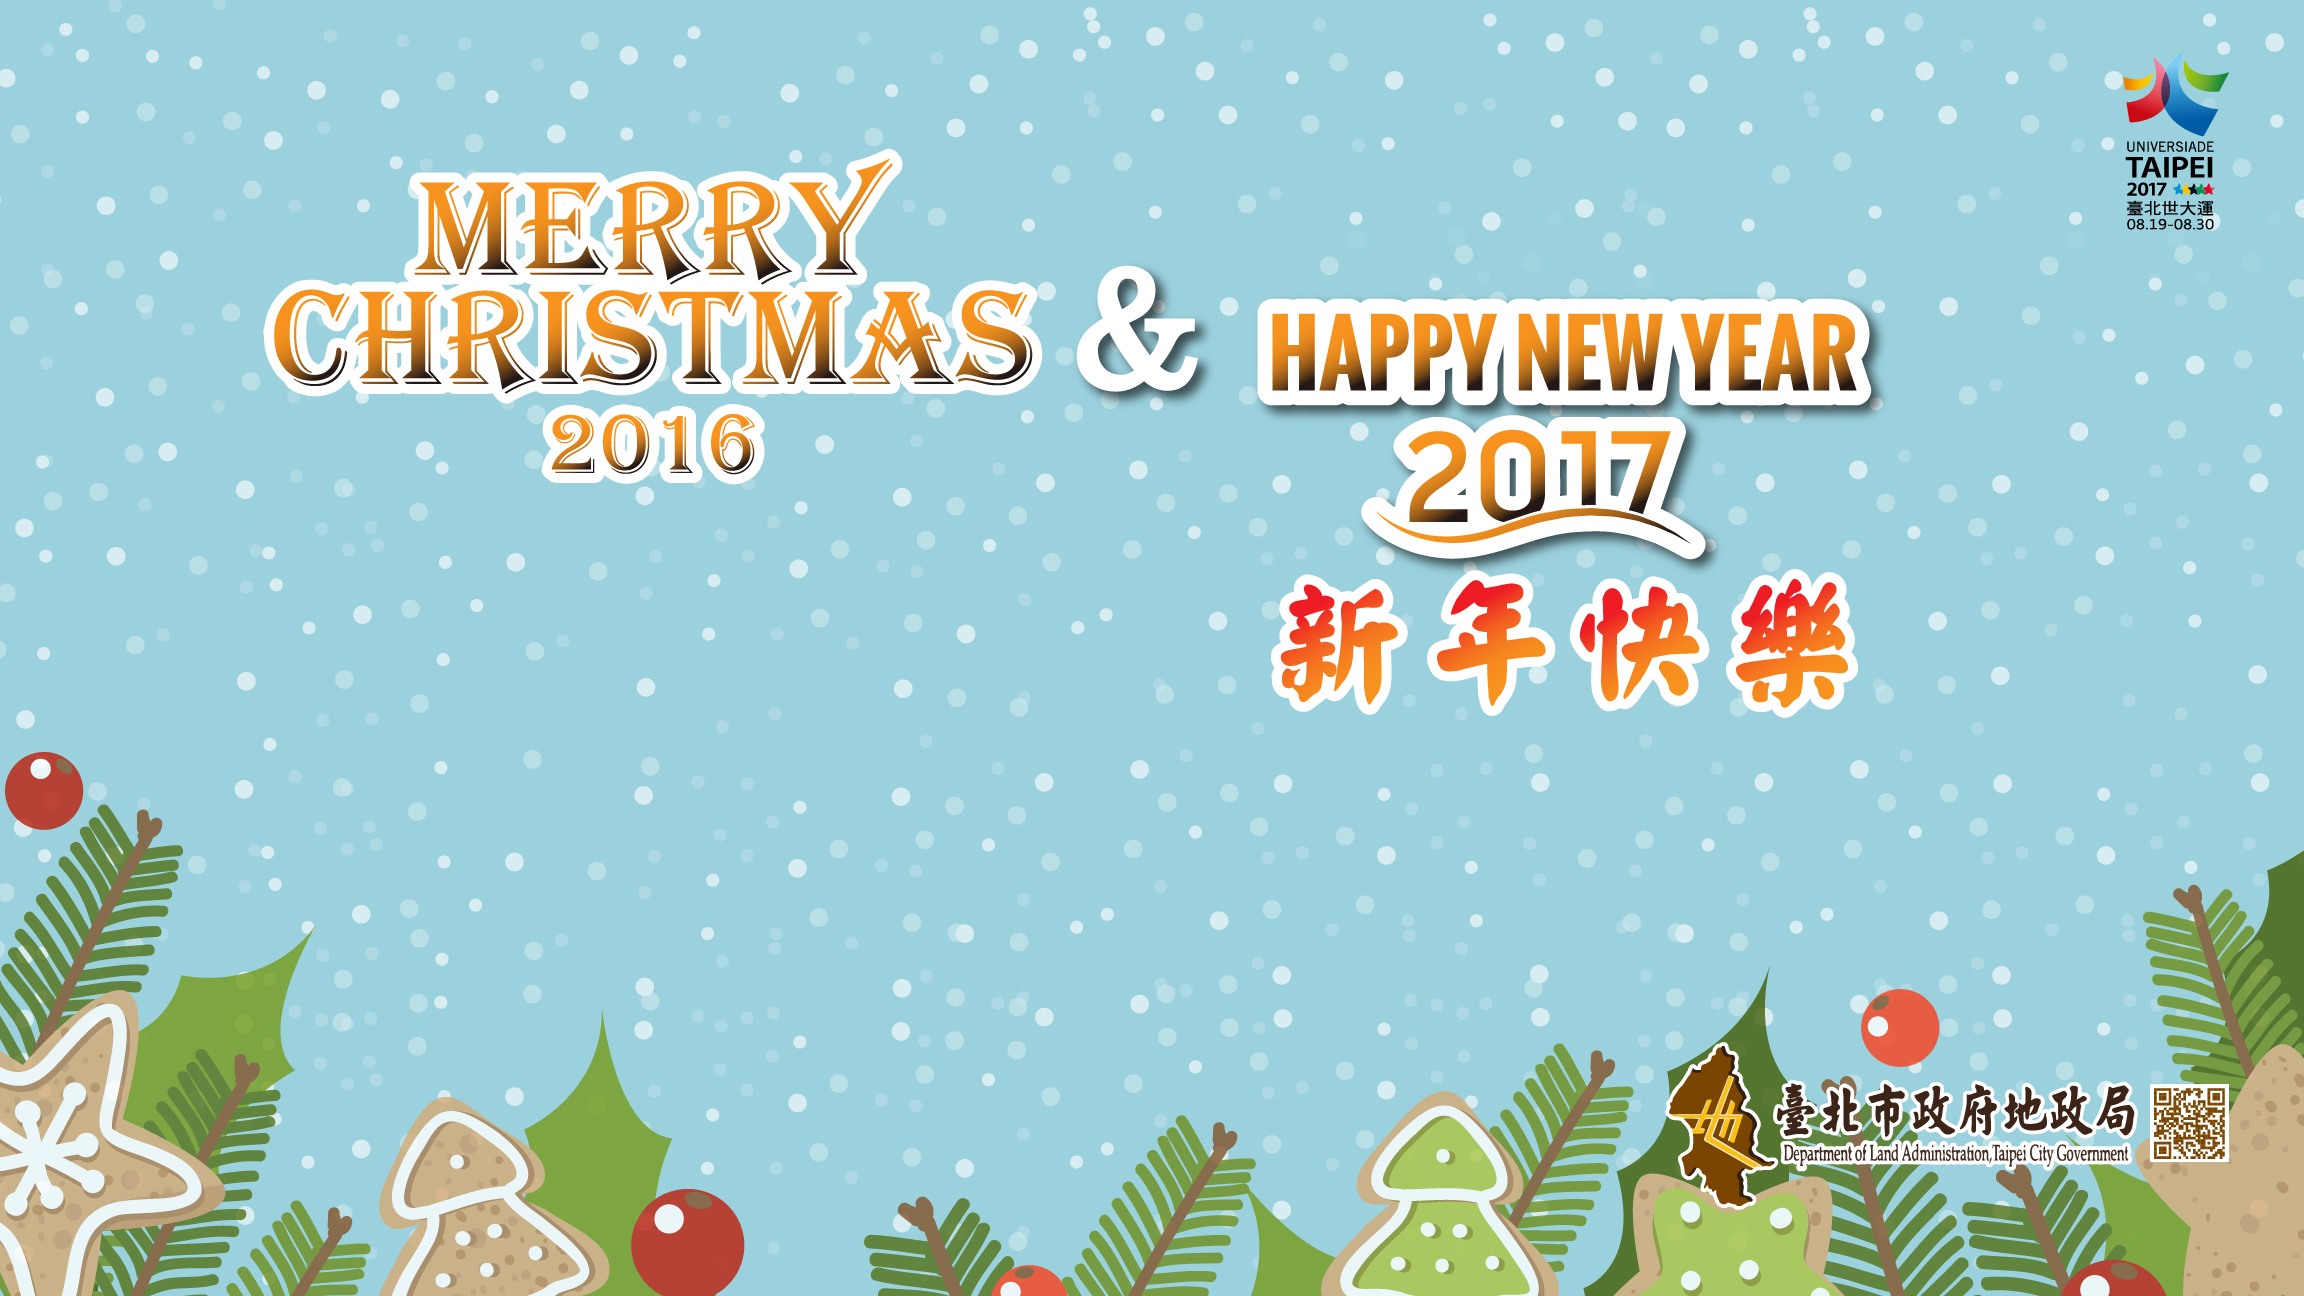 臺北市政府地政局祝您新年快樂